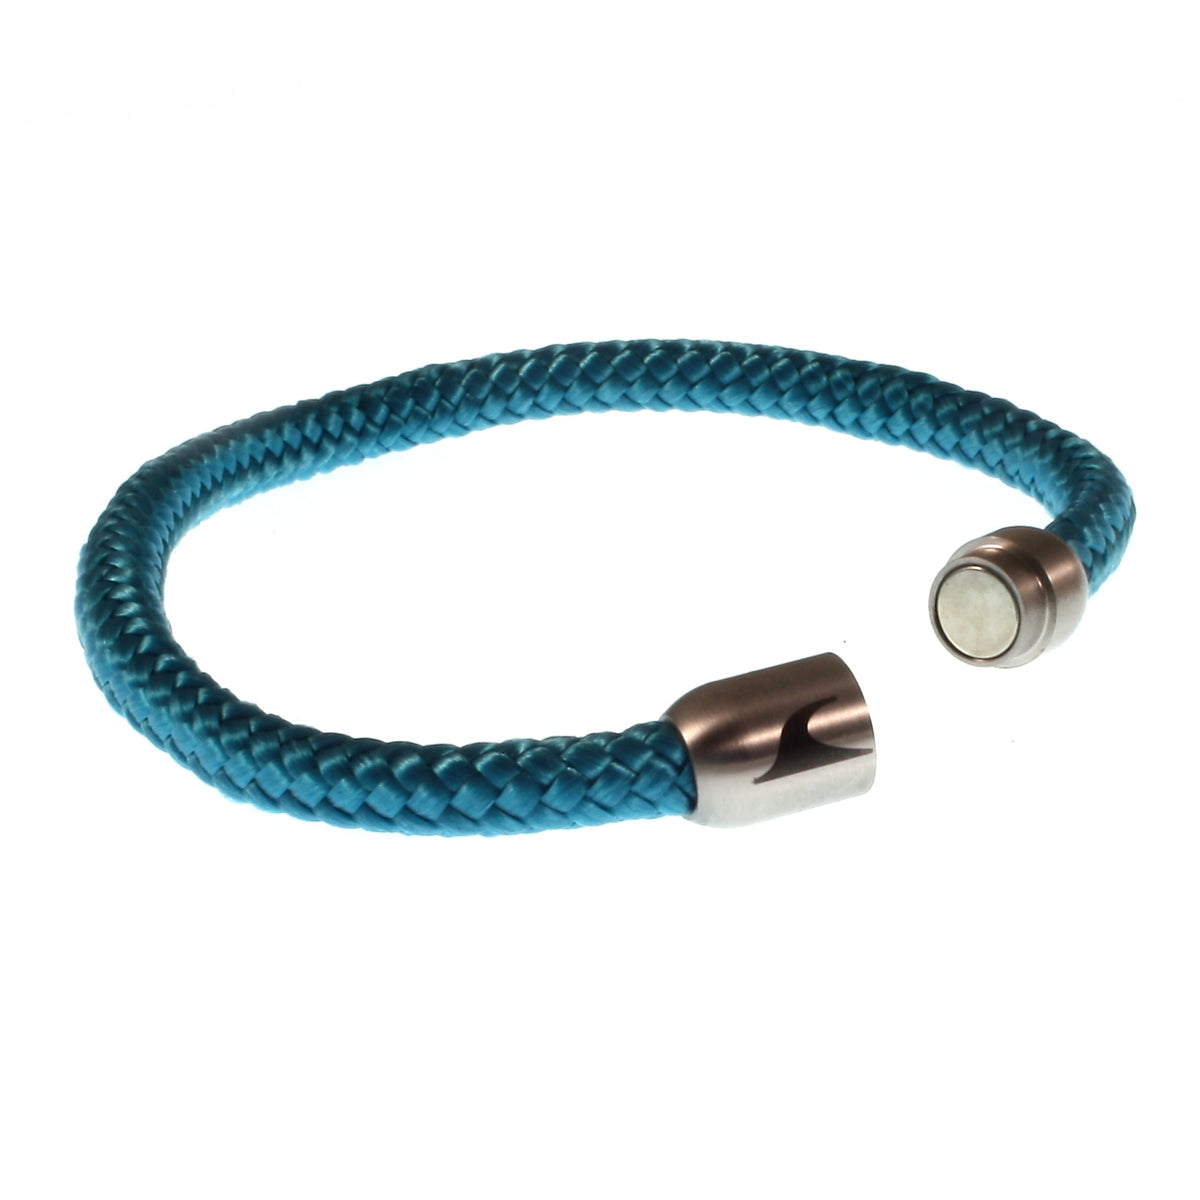 Herren-segeltau-armband-damen-sylt-blau-silber-geflochten-Edelstahlverschluss-offen-wavepirate-shop-st